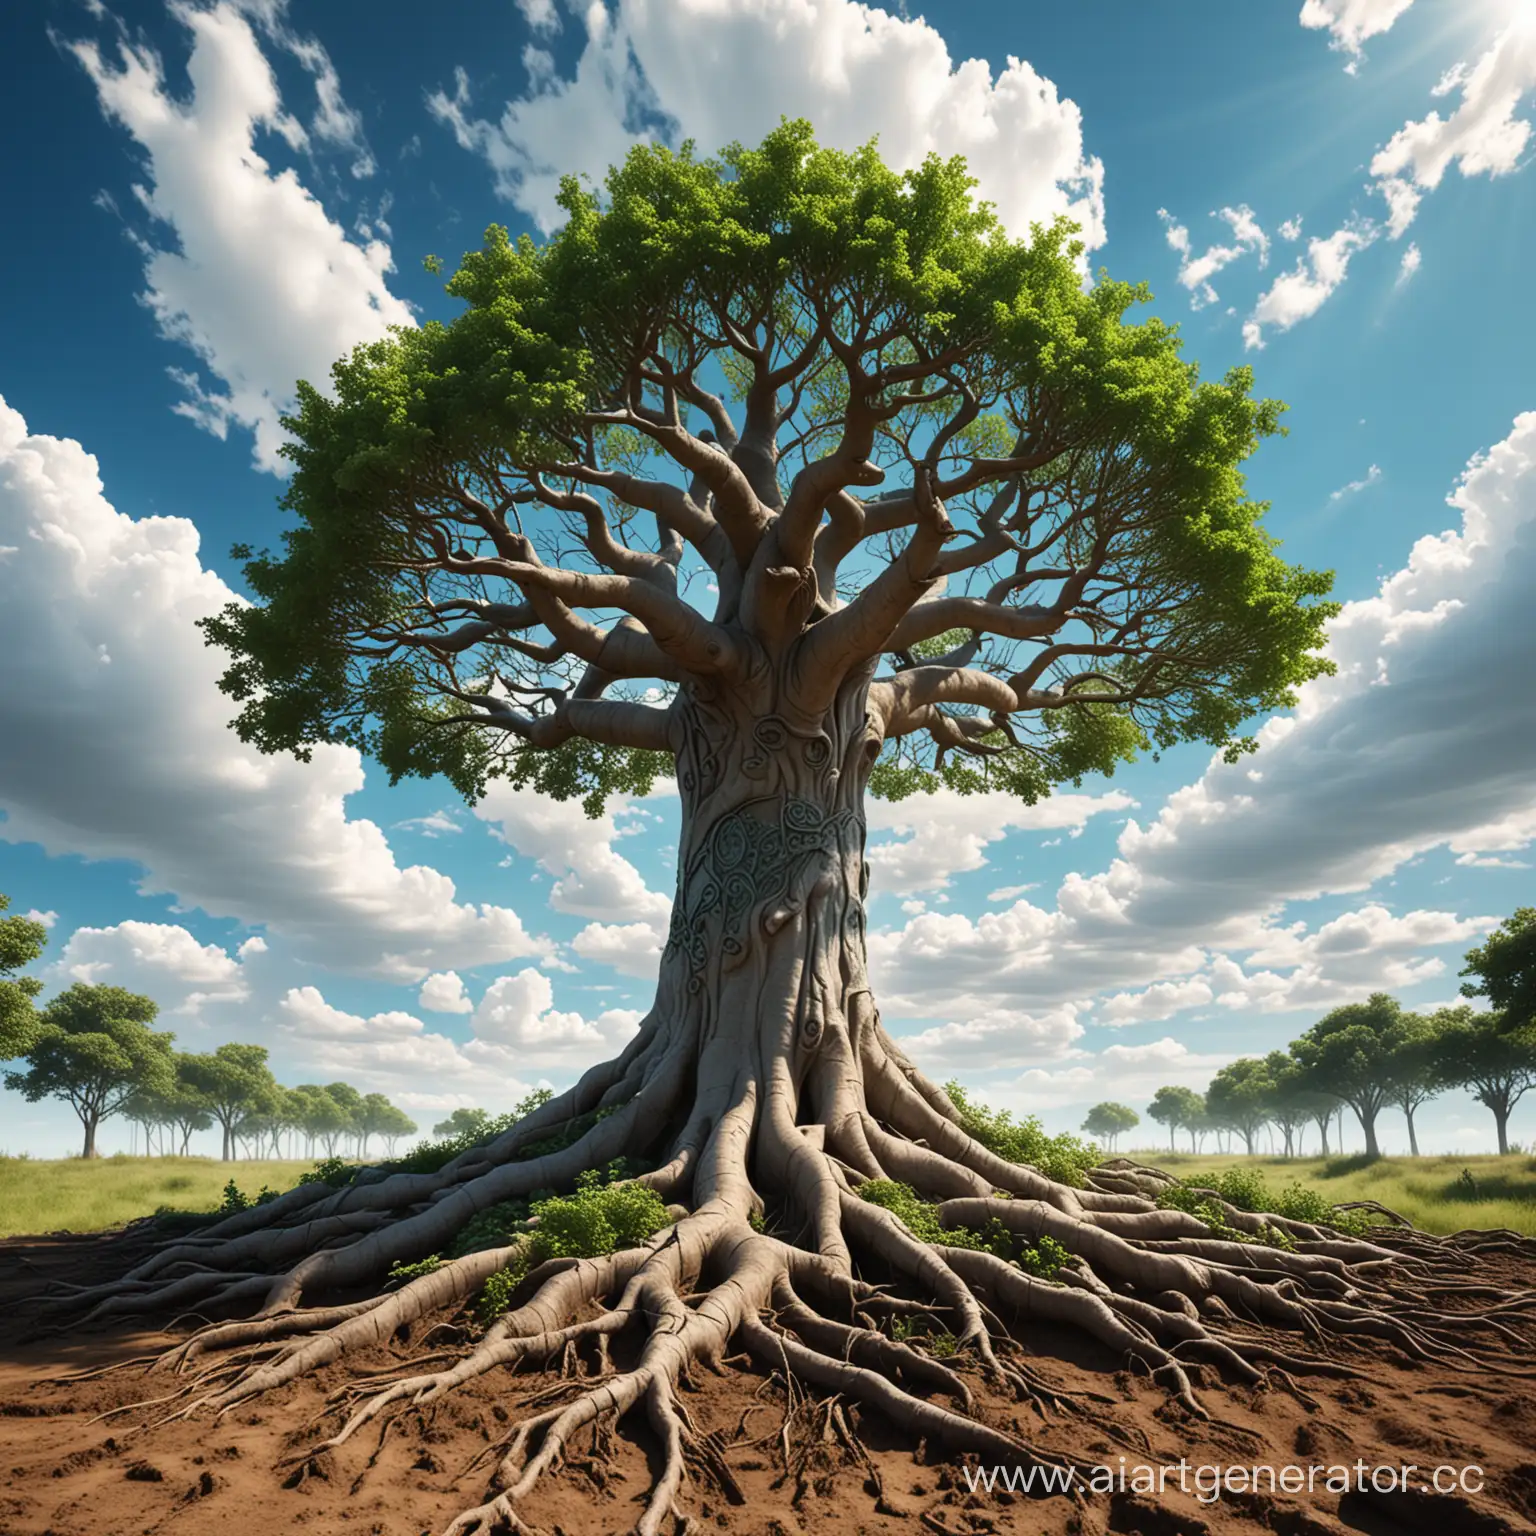 дерево жизни, большая крона с листьями полностью видна, , у дерева толстый ствол, фон голубое небо с облаками, корни уходят в землю с травой и футуристичным оформлением